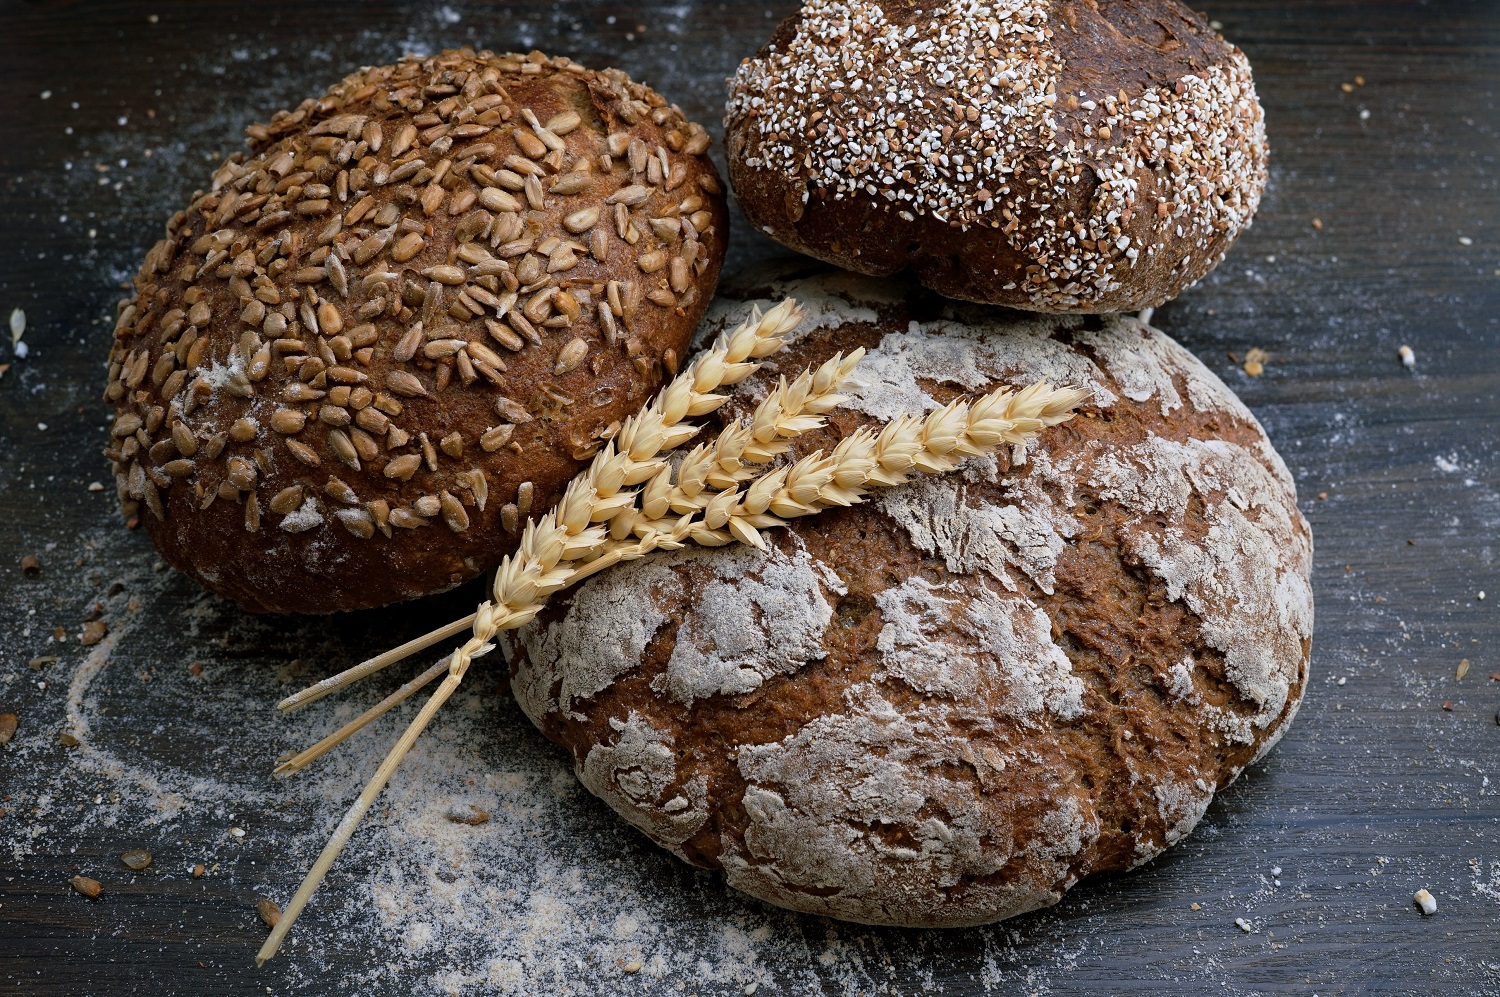 Karštis – tikras iššūkis duonai: kaip teisingai laikyti, kad nereikėtų išmesti?